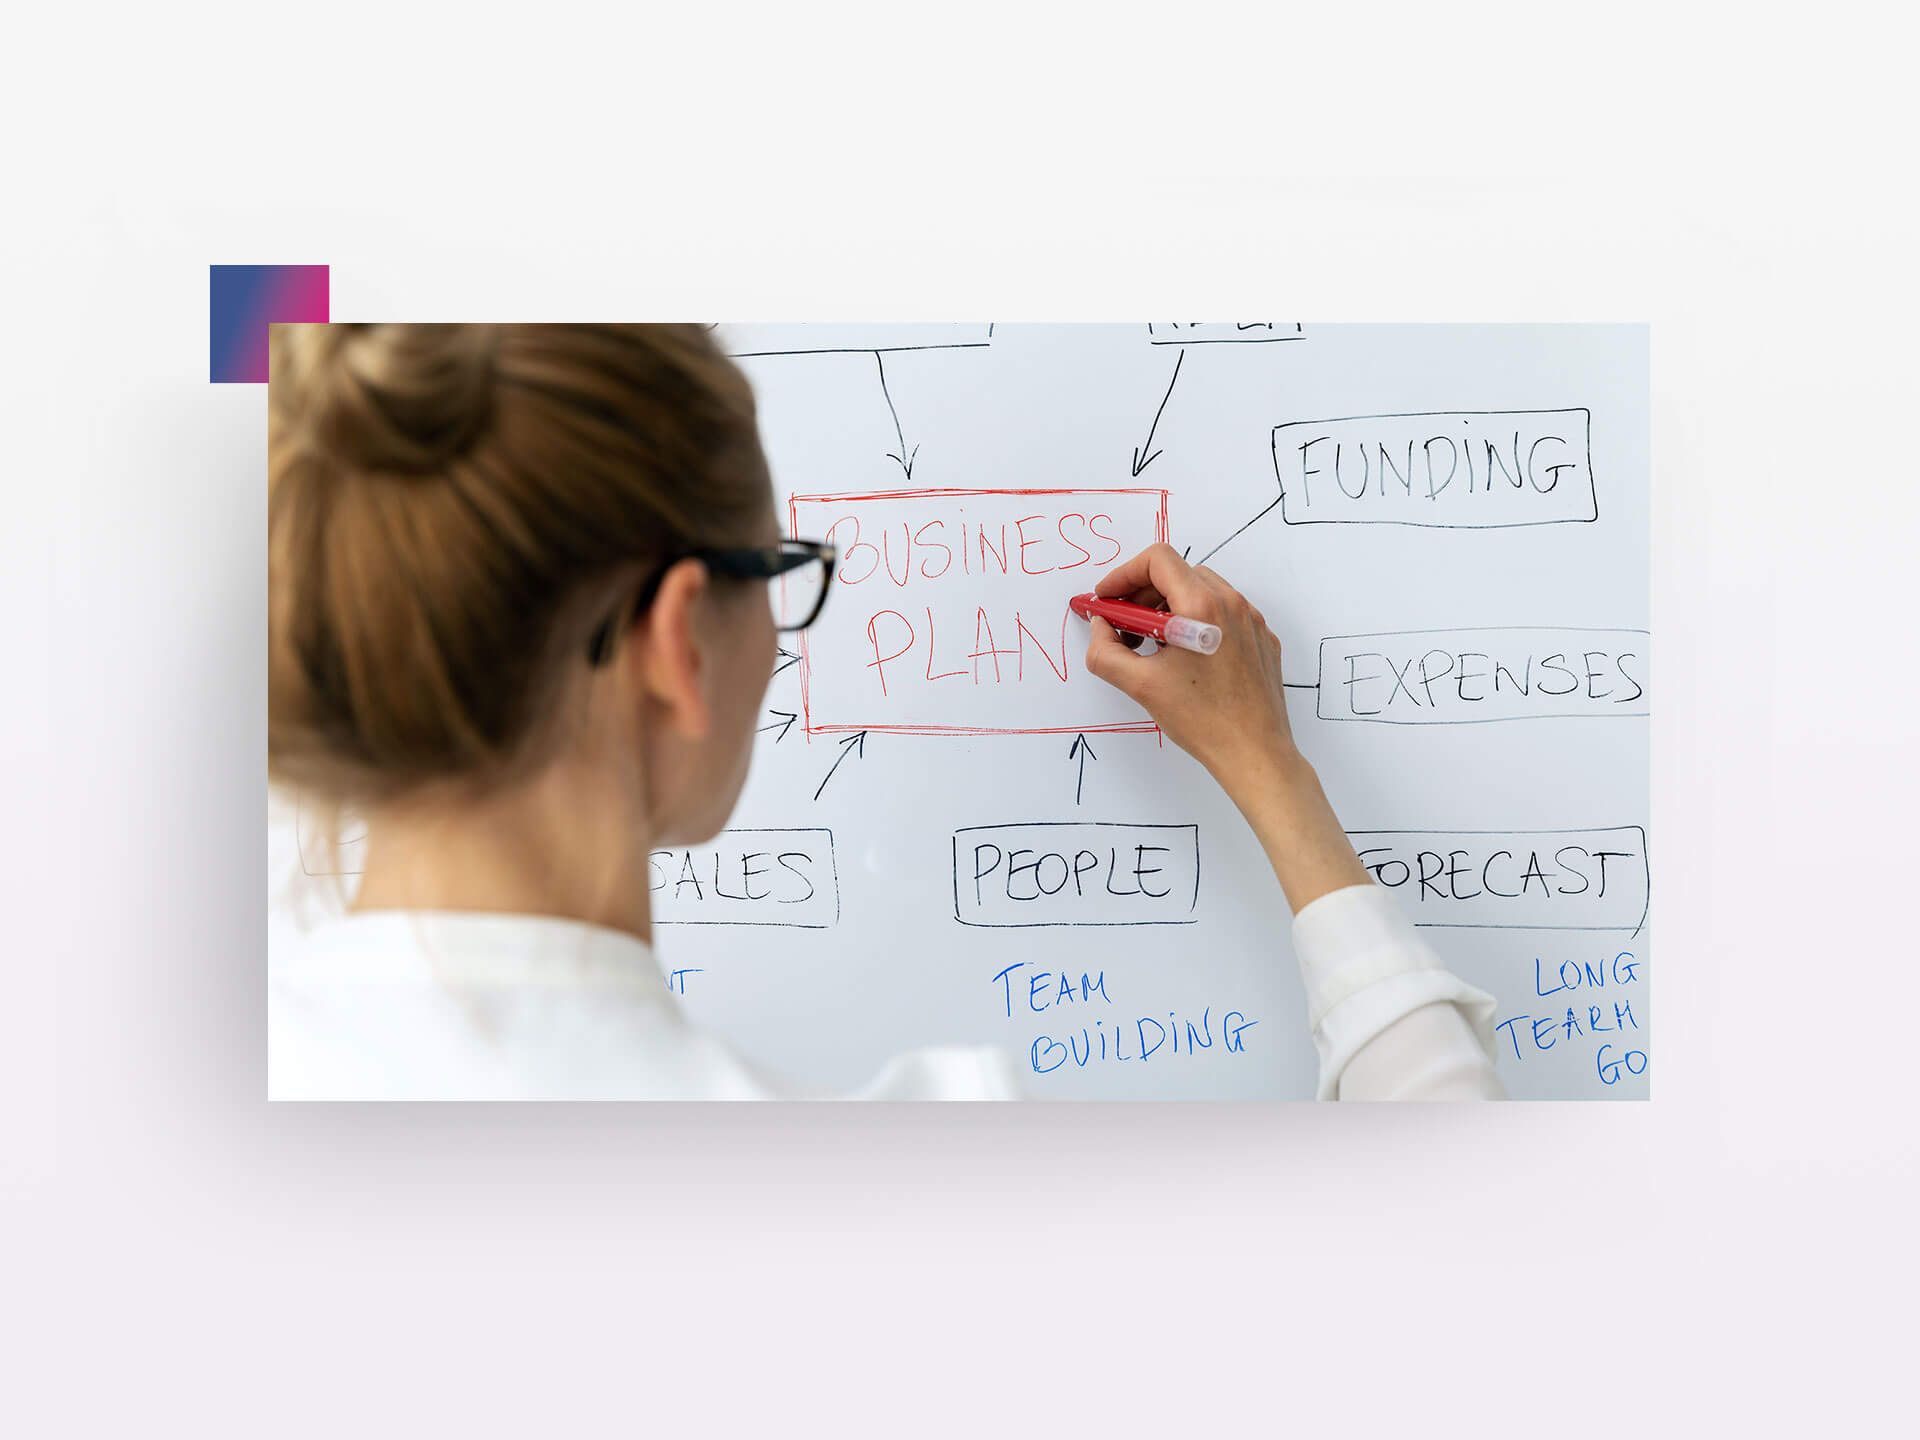 Frau zeichnet Business Plan auf Whiteboard